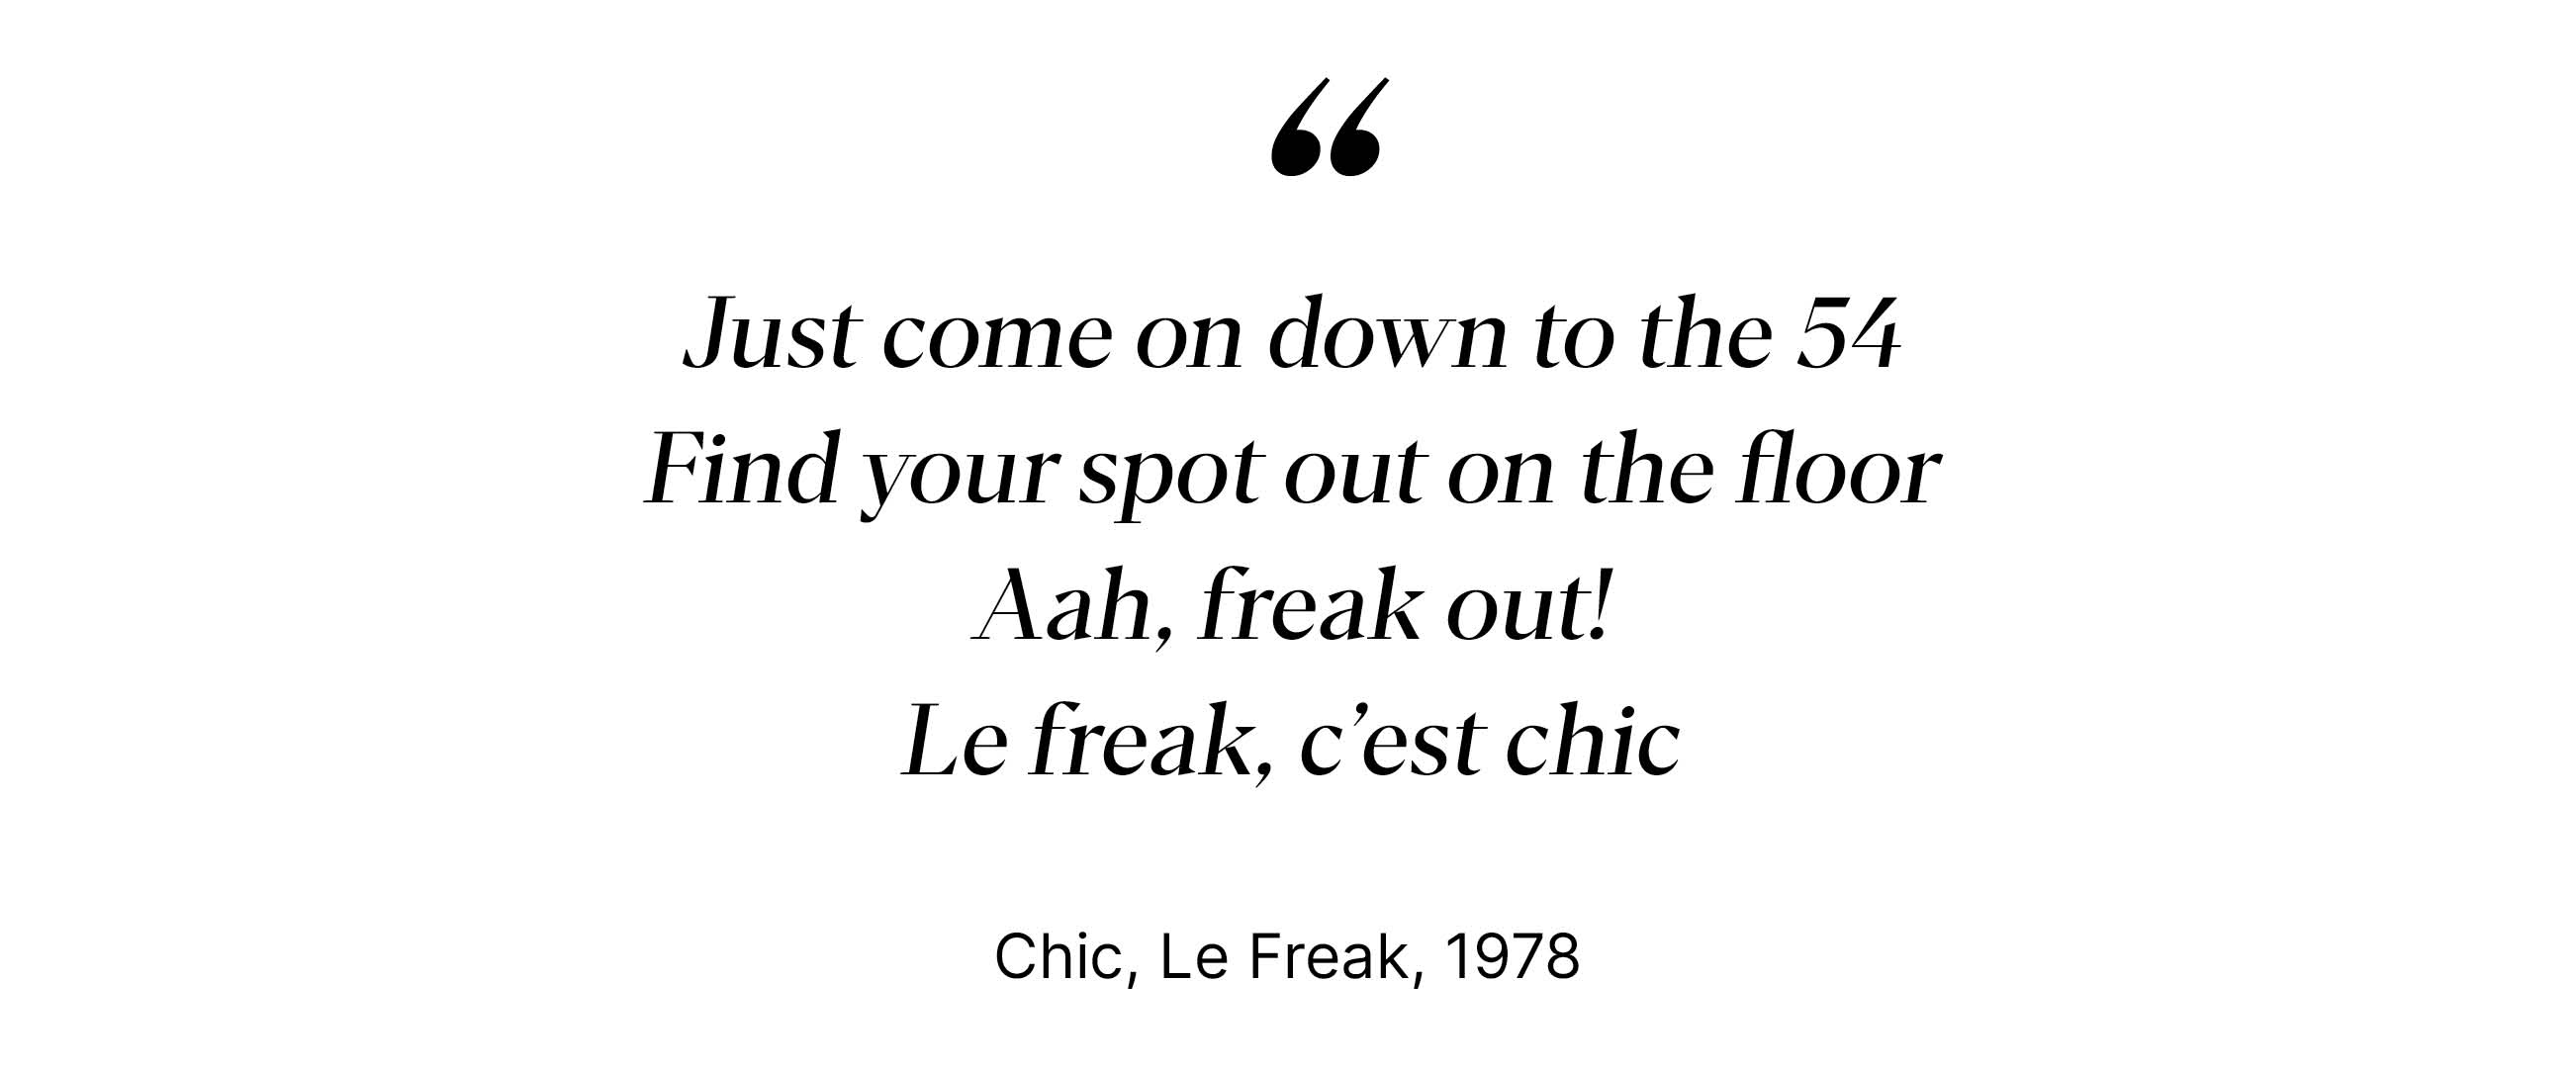 Chic, Le Freak, 1978